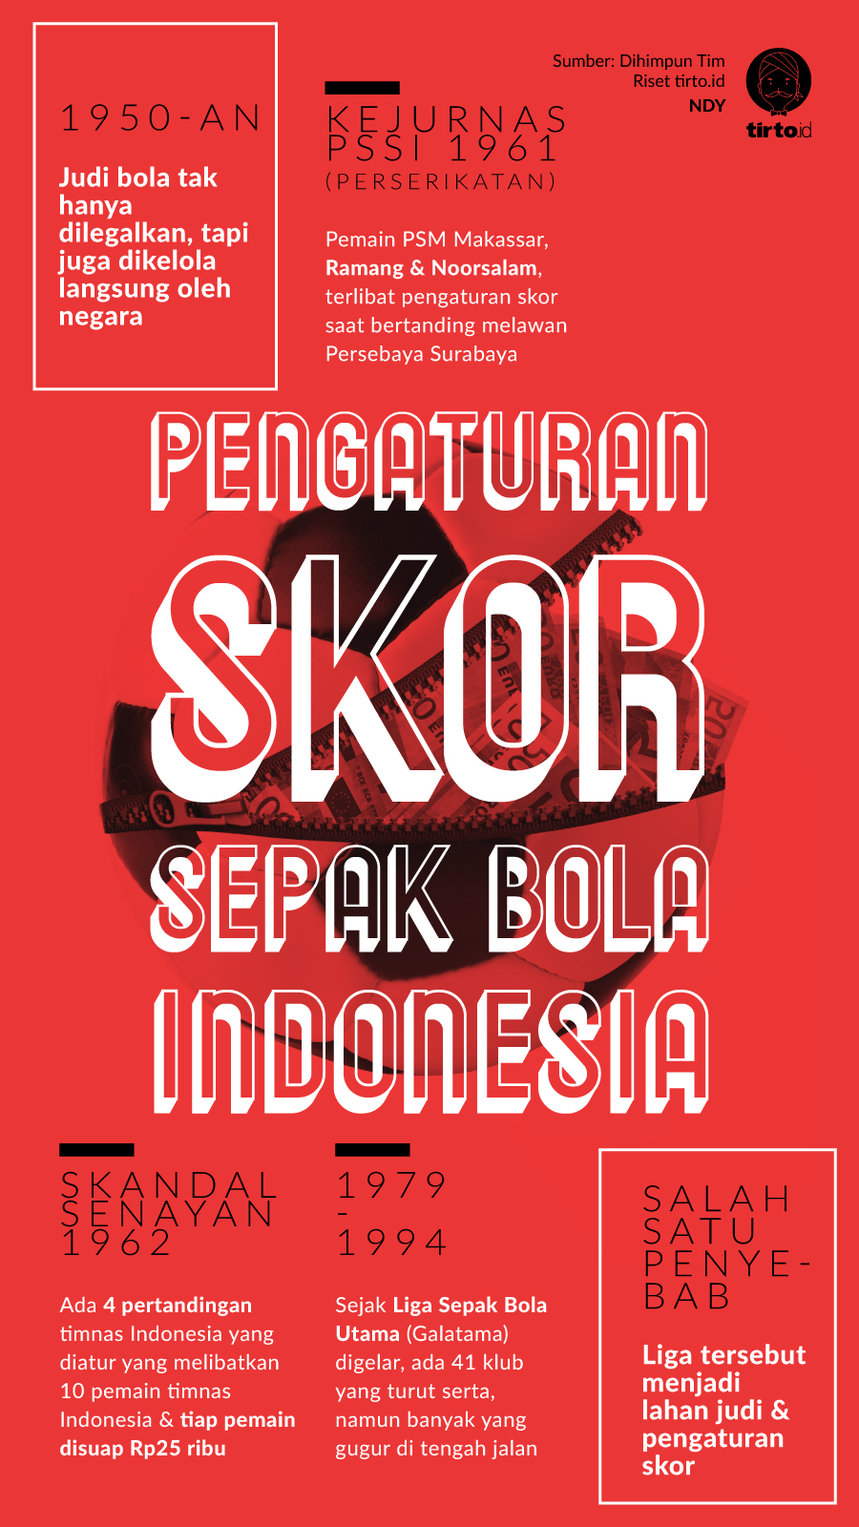 Infografik Pengaturan Skor Sepak Bola Indonesia